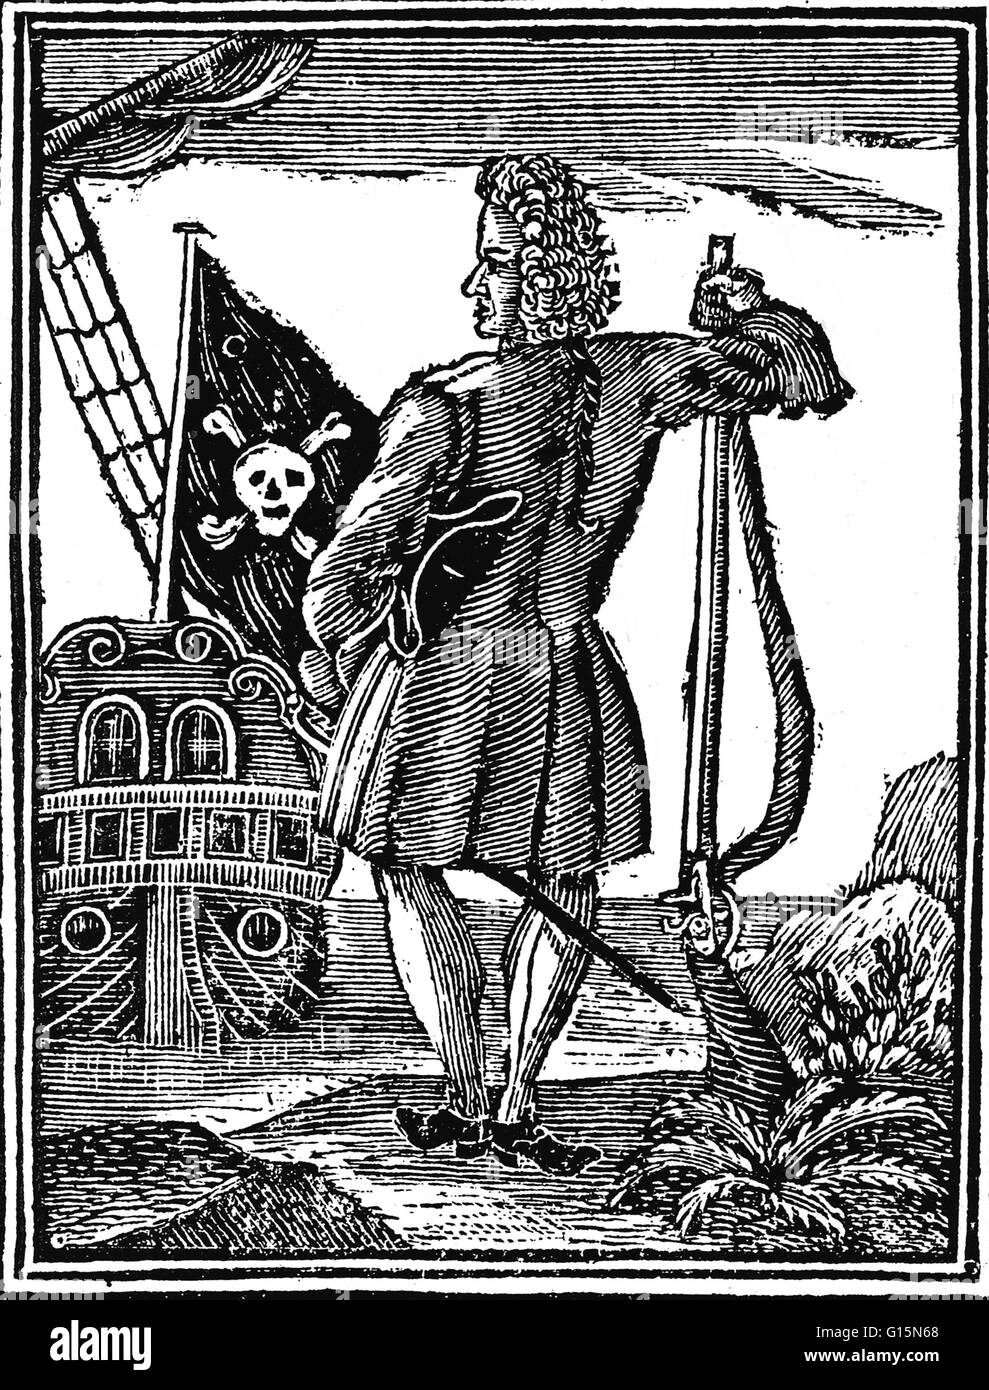 Grabado de capó de una Historia General de los robos y asesinatos de los más notorios Pyrates, 1725 edition. Stede Bonnet (1688 - Diciembre 10,1718) fue un pirata inglés nacido en Barbados. Fue apodado "el caballero Pirate', porque él se había Foto de stock